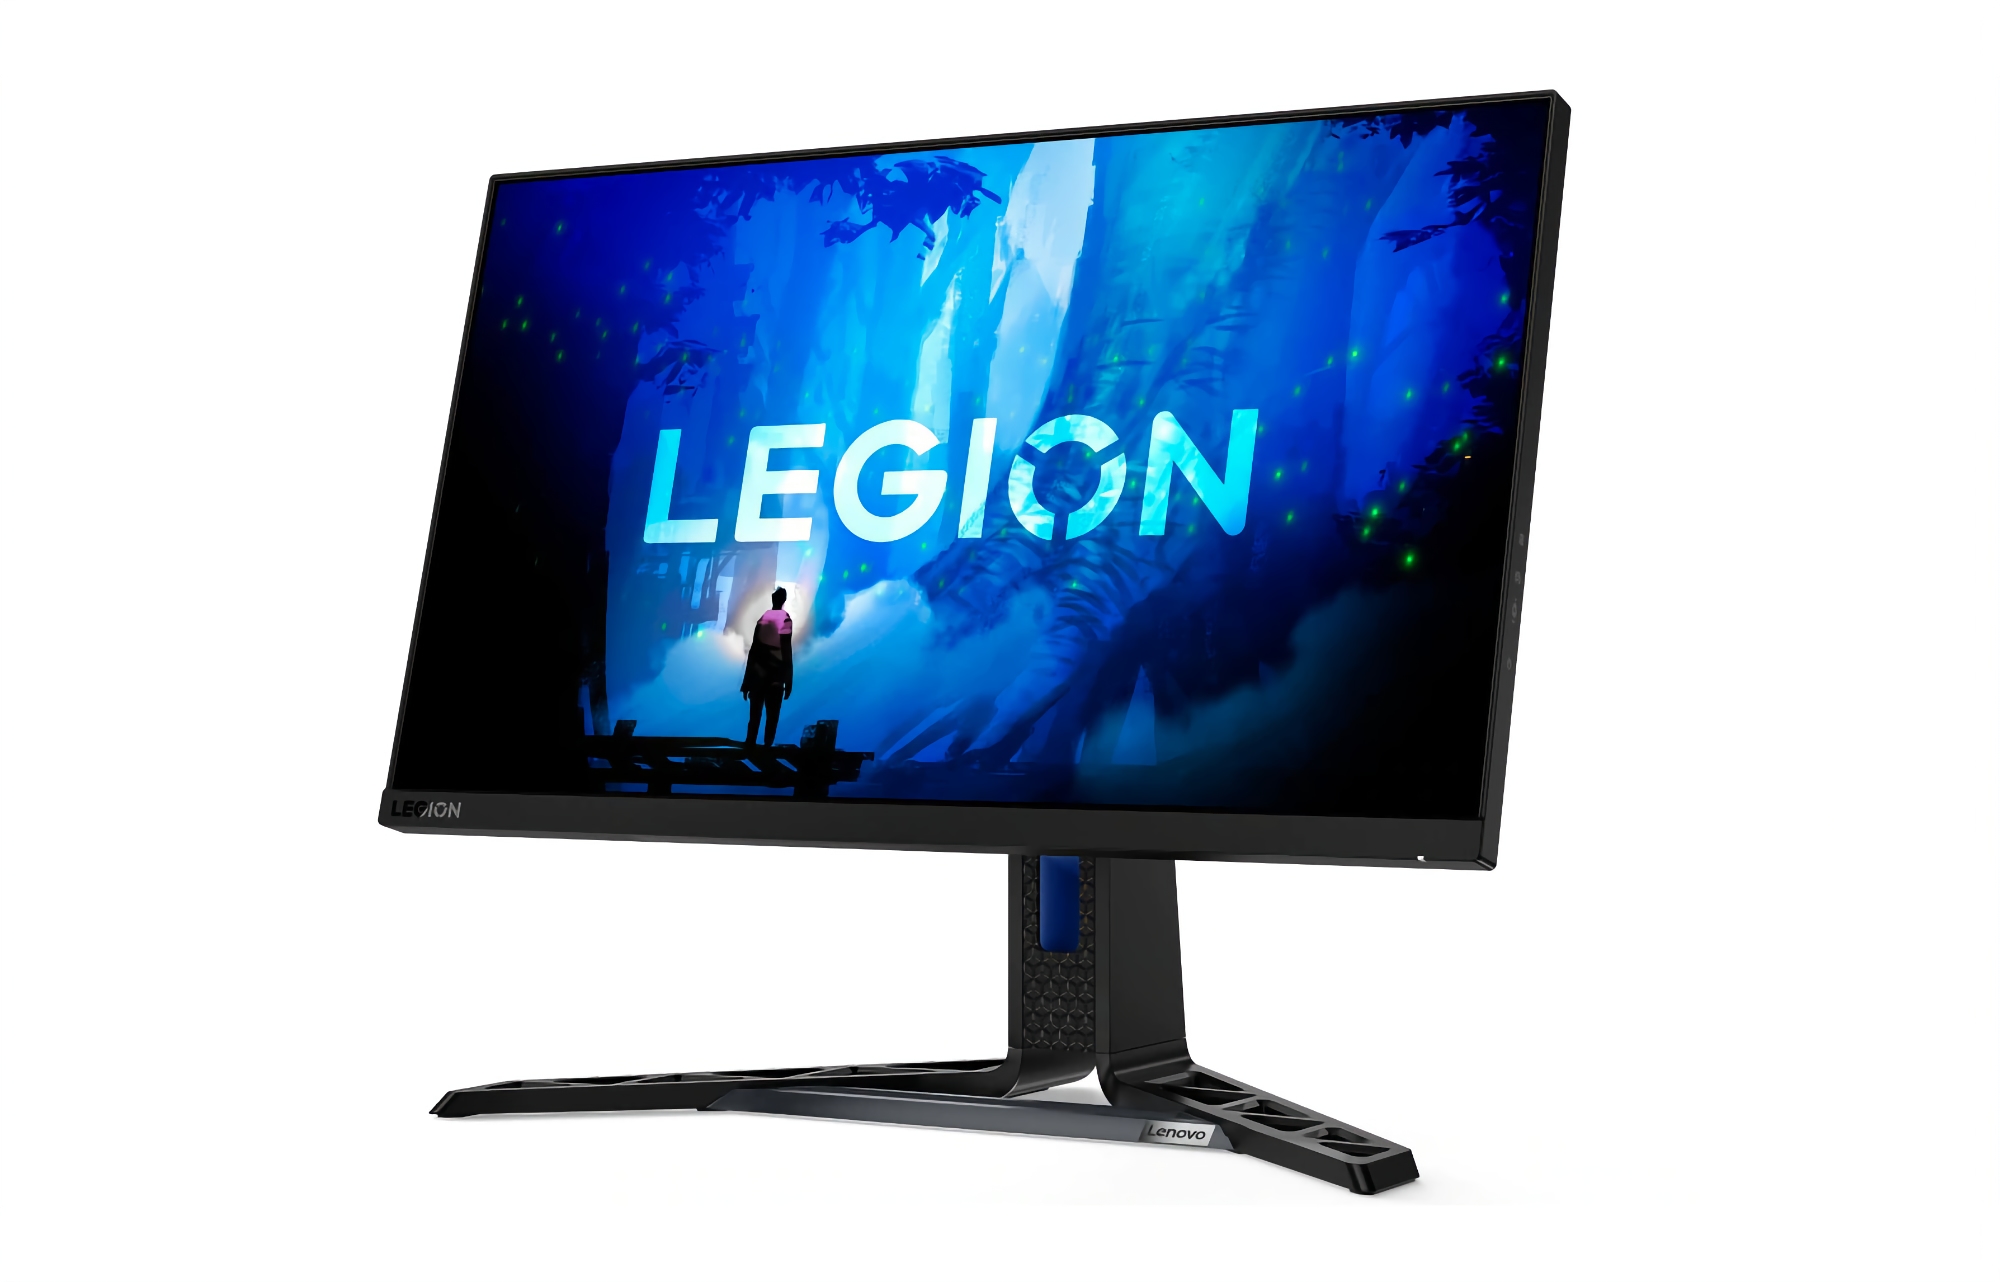 Lenovo lancera le 28 février un moniteur de jeu Legion Y25 avec un écran de 24,5 pouces et un taux de rafraîchissement de 240 Hz